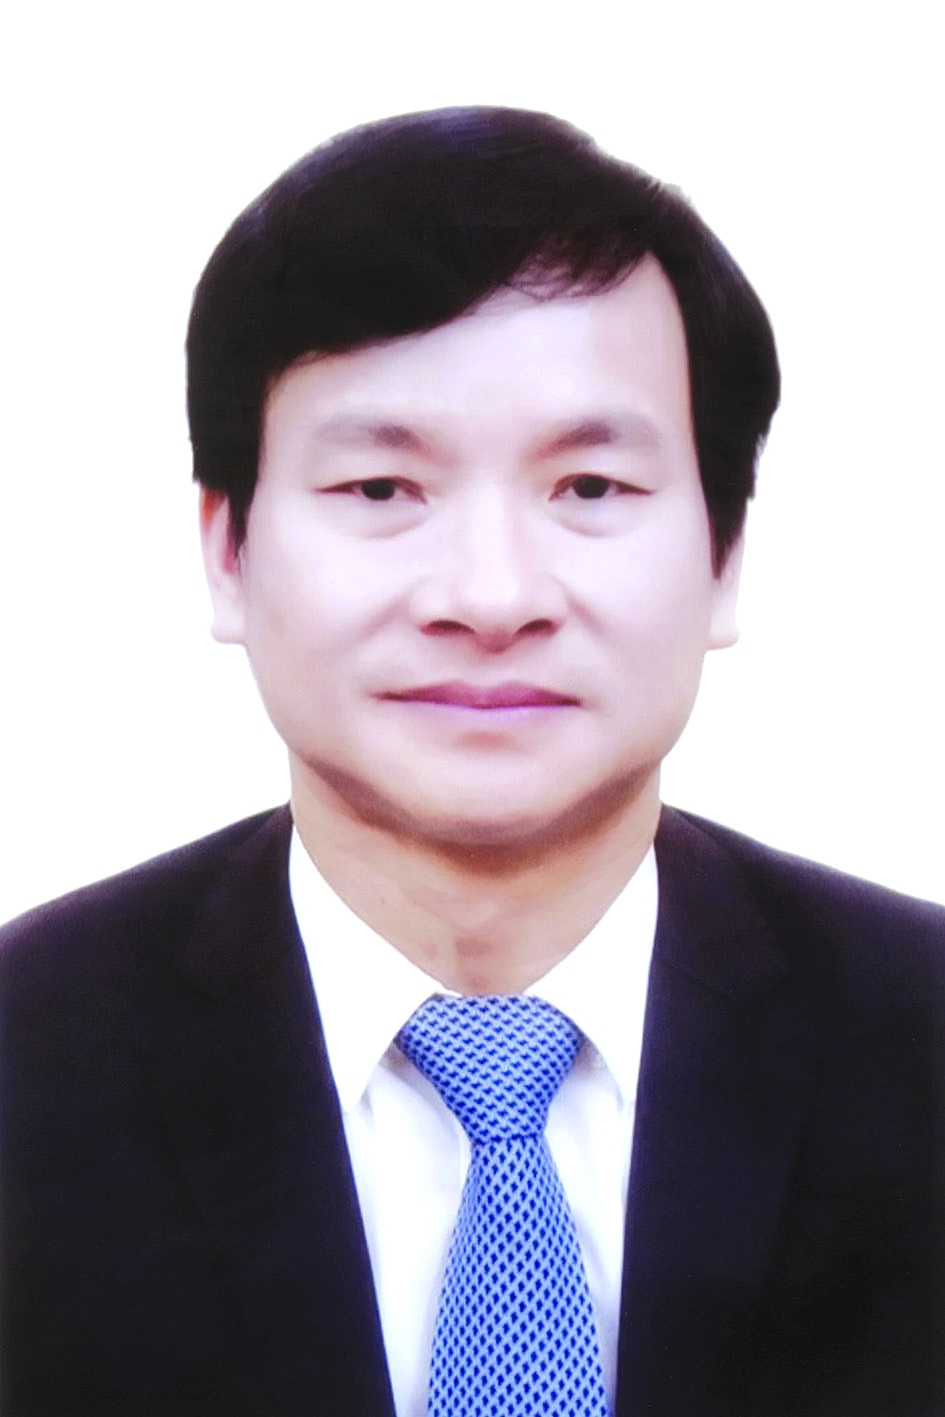 Chương trình hành động của Bí thư Huyện ủy Phúc Thọ Nguyễn Doãn Hoàn, ứng cử viên đại biểu HĐND TP Hà Nội nhiệm kỳ 2021 - 2026 - Ảnh 1